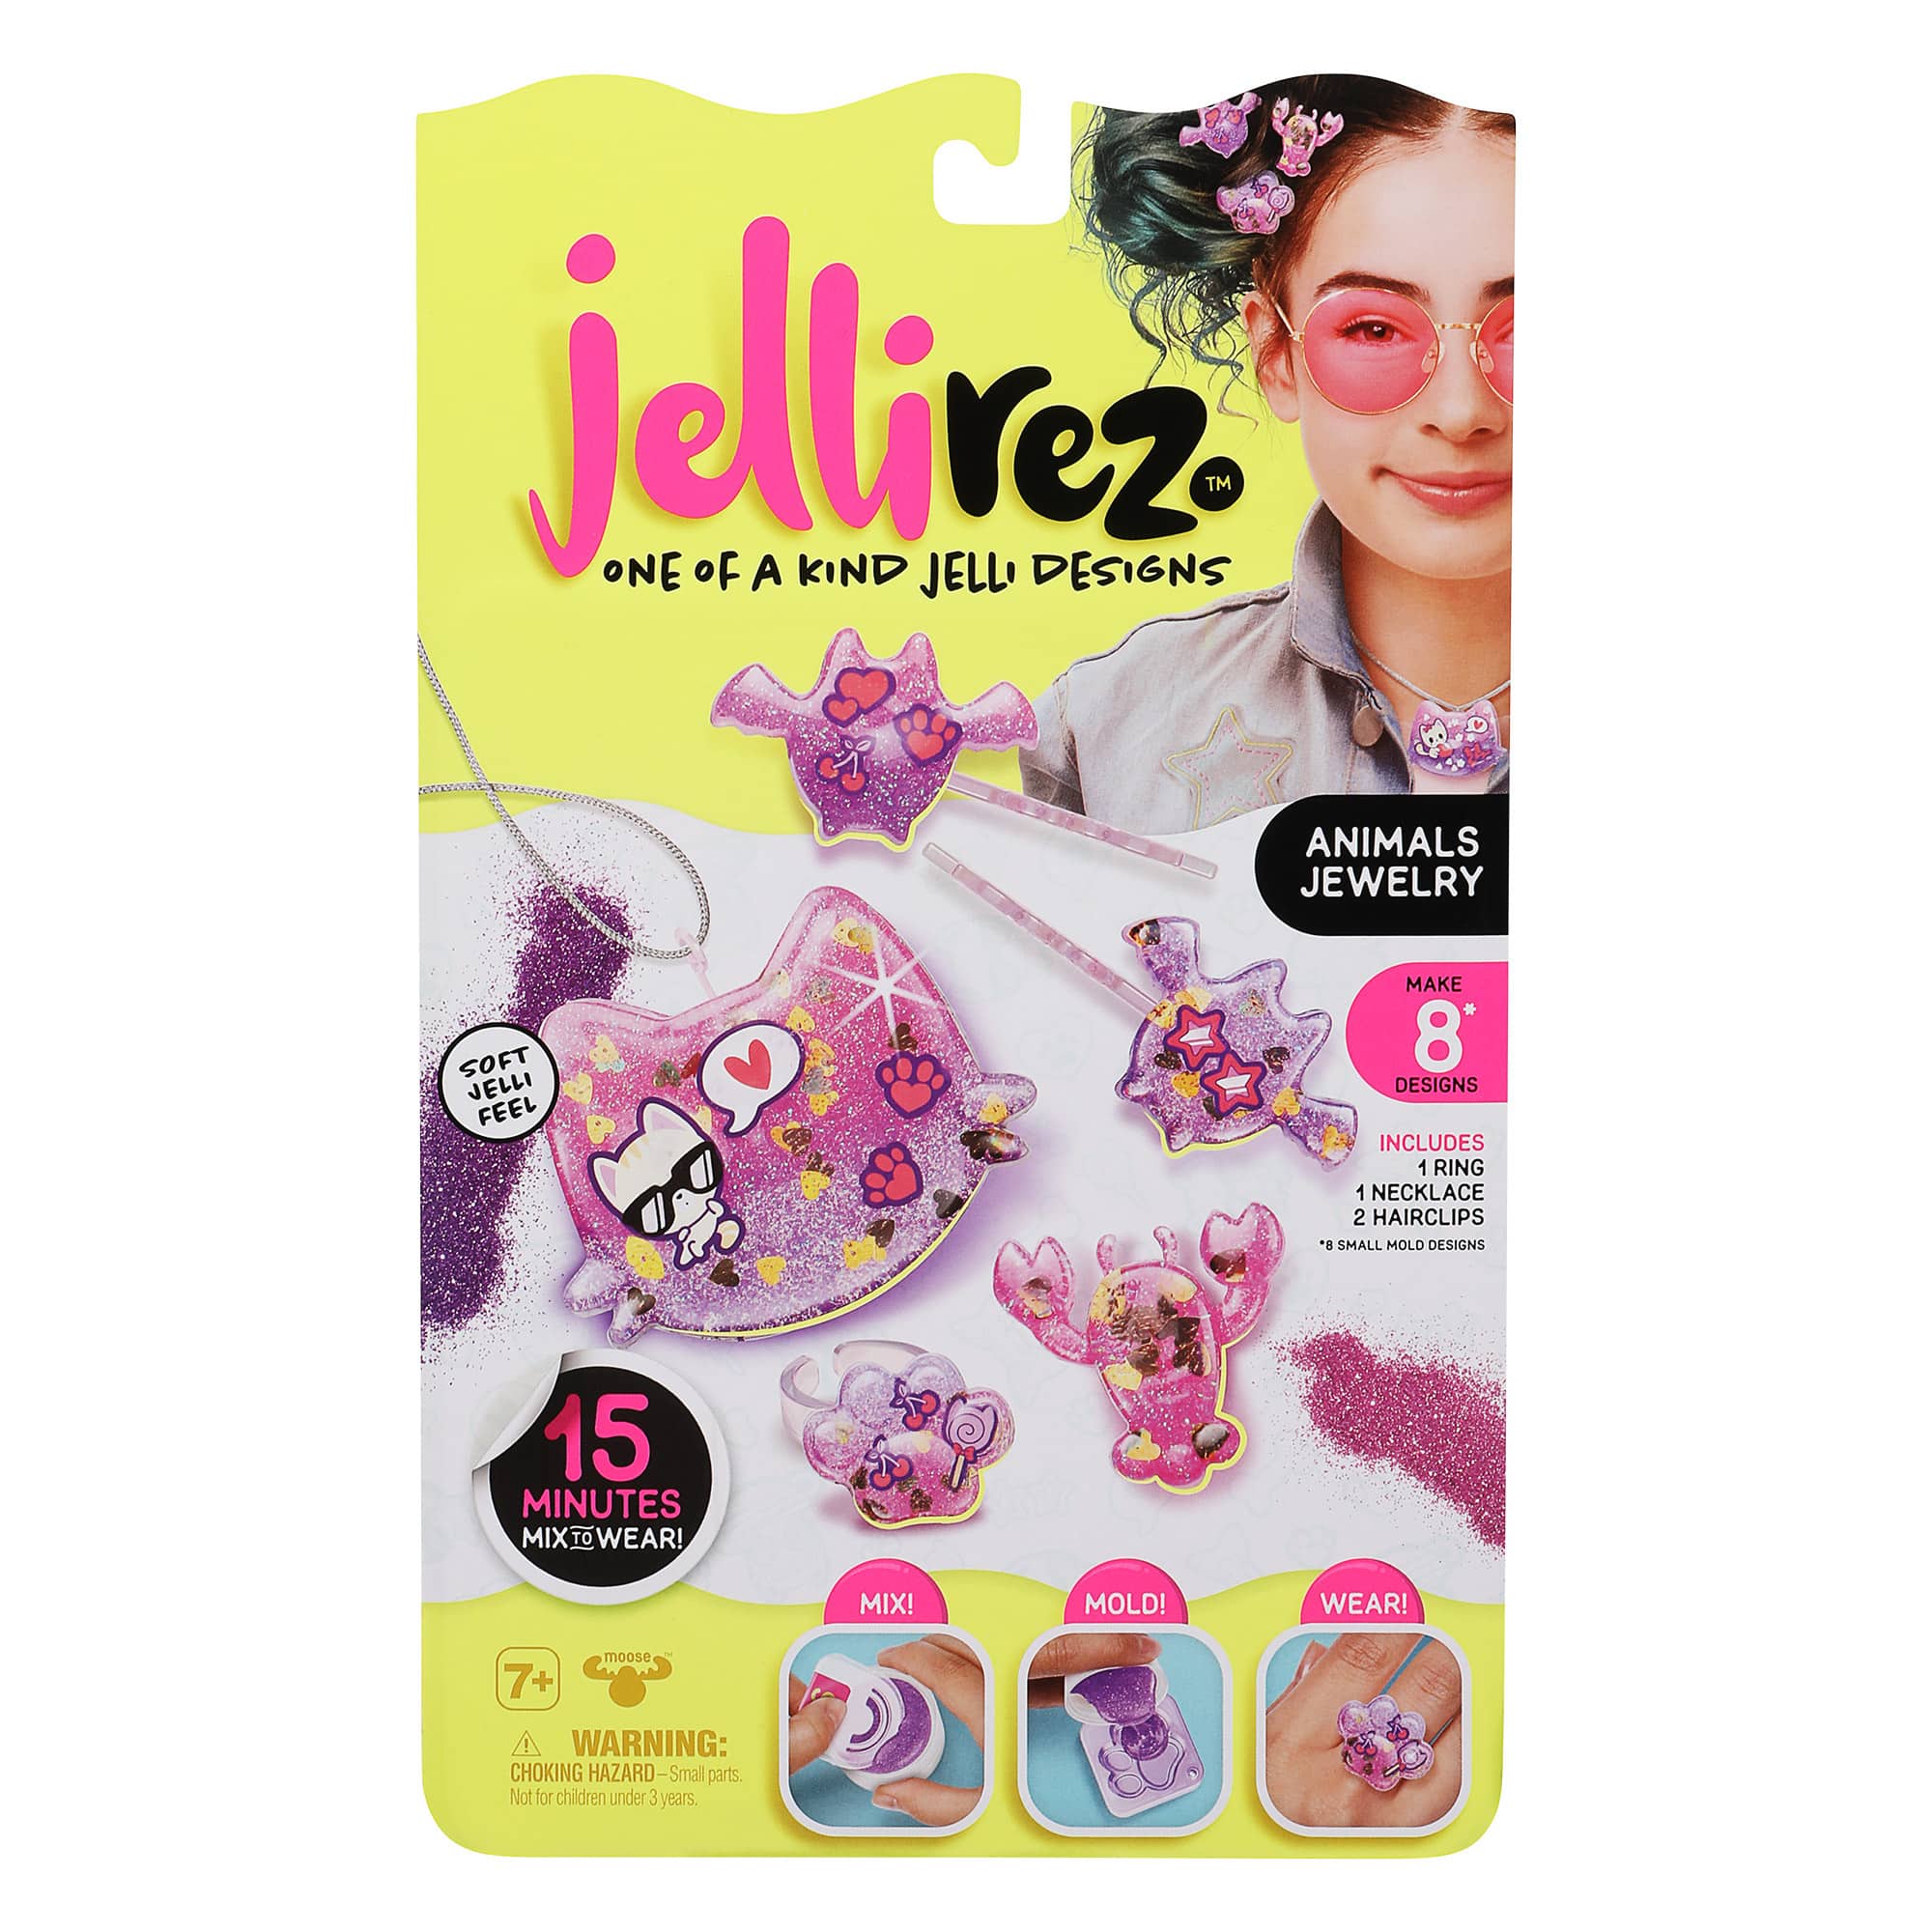 Jelli Rez - Animals Jewellery Pack